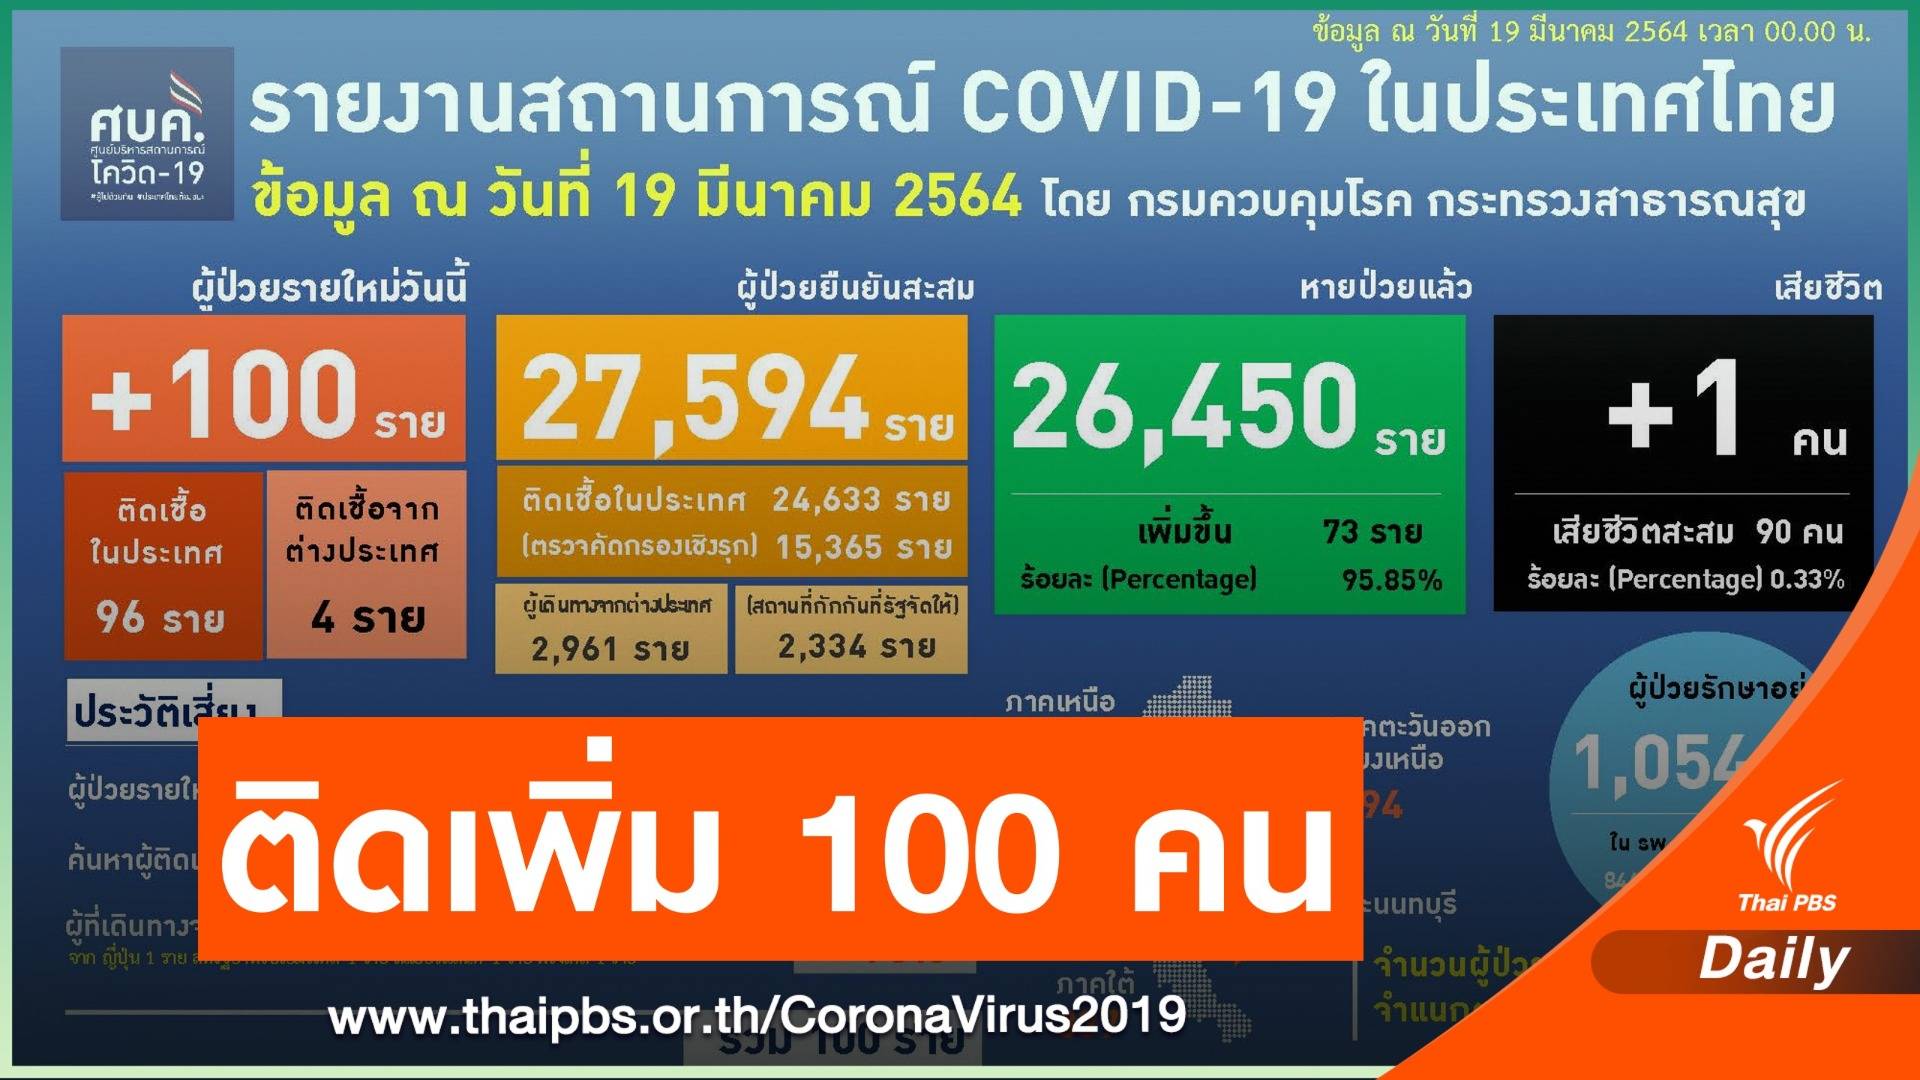 หญิงสมุทรสาครป่วย COVID-19 เสียชีวิตคนที่ 90 ของไทย